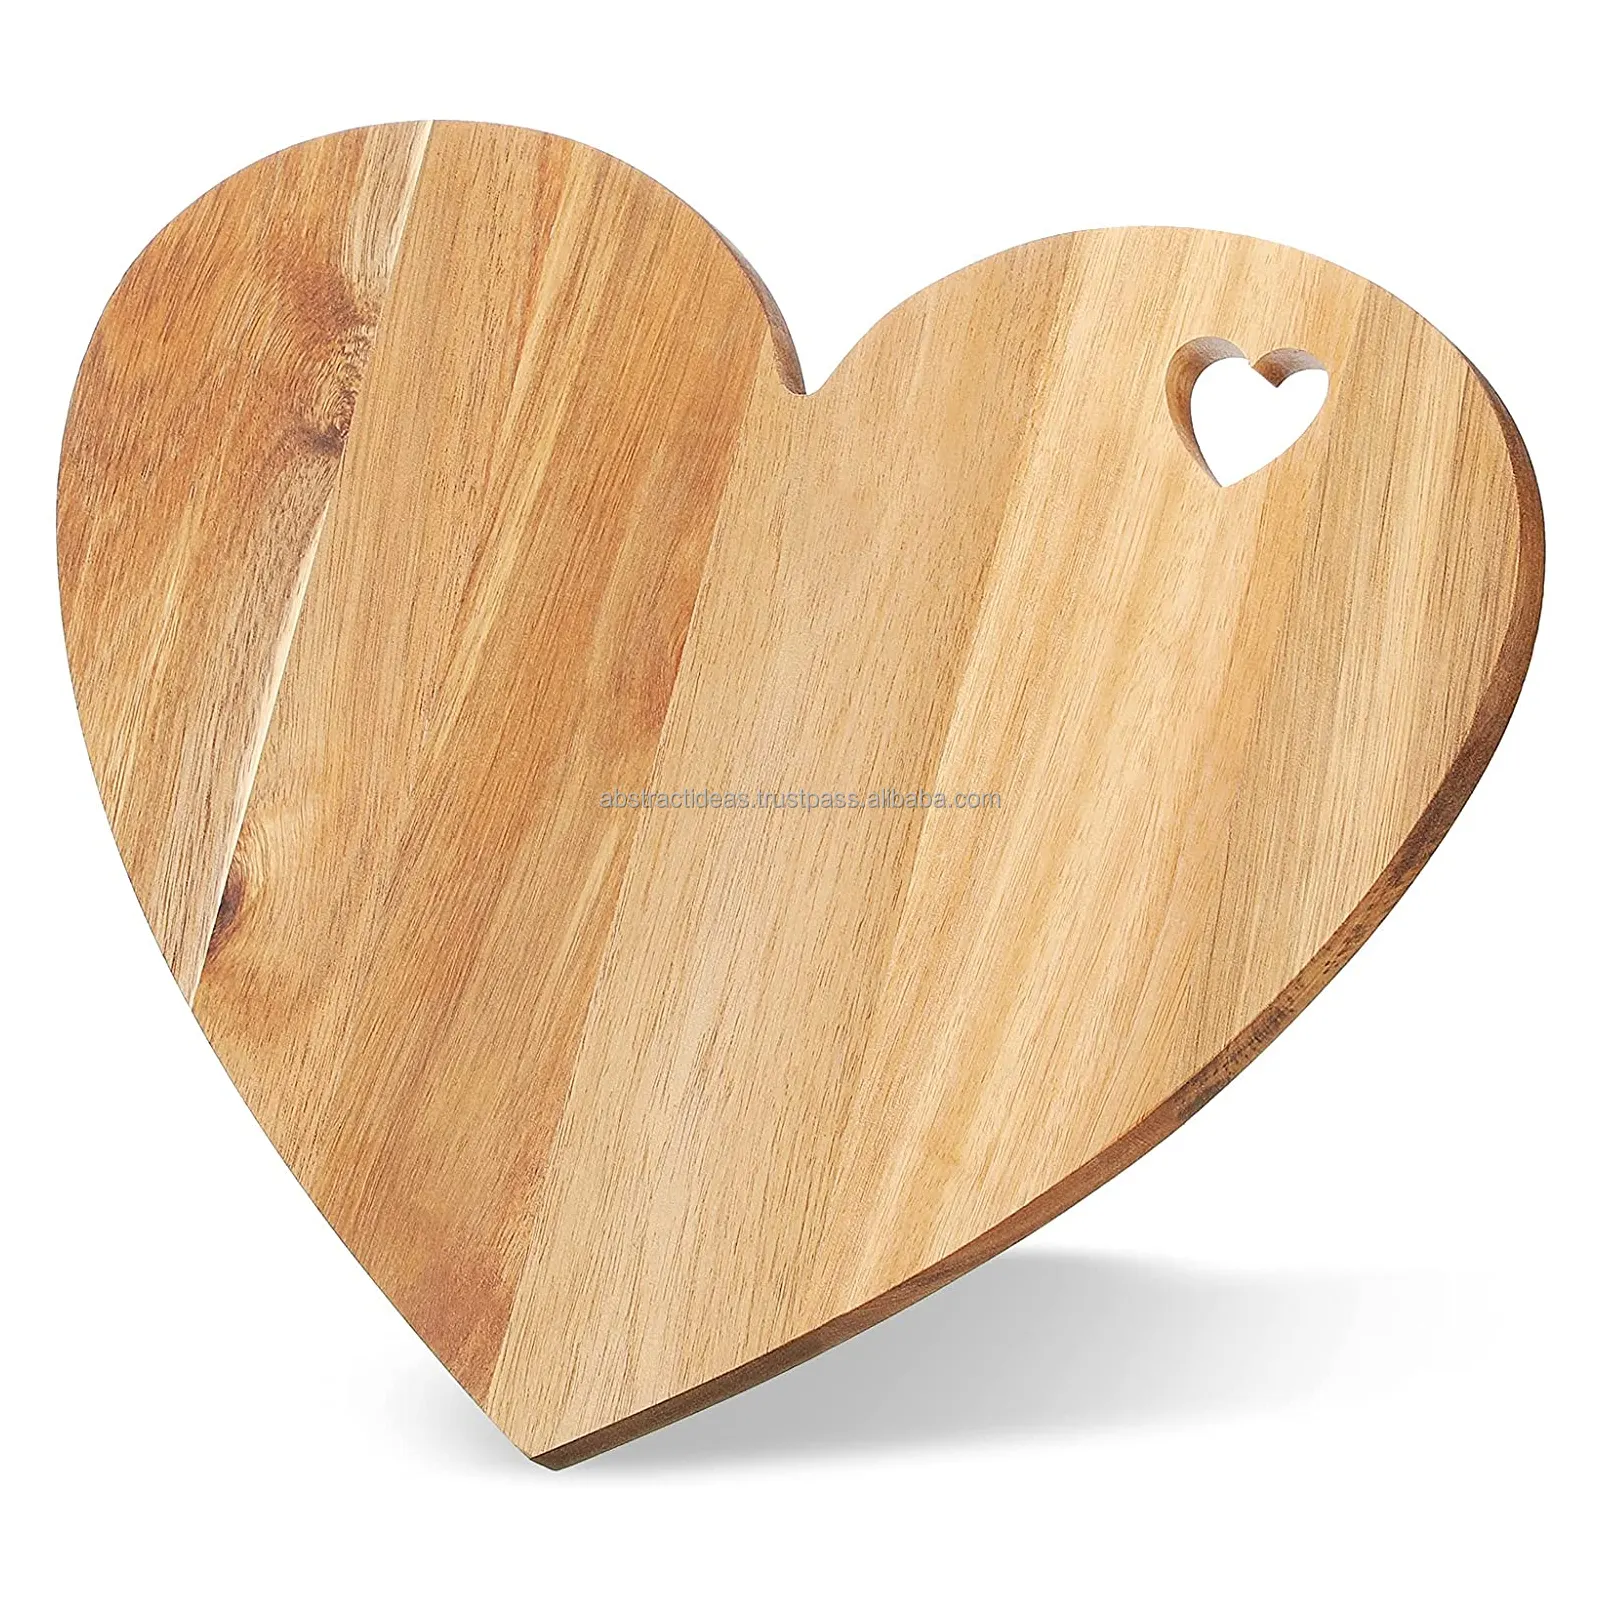 Tábua de madeira, venda quente, placa de corte de madeira em forma de coração, placa de cortar, grande, charcuterie, placas de servir